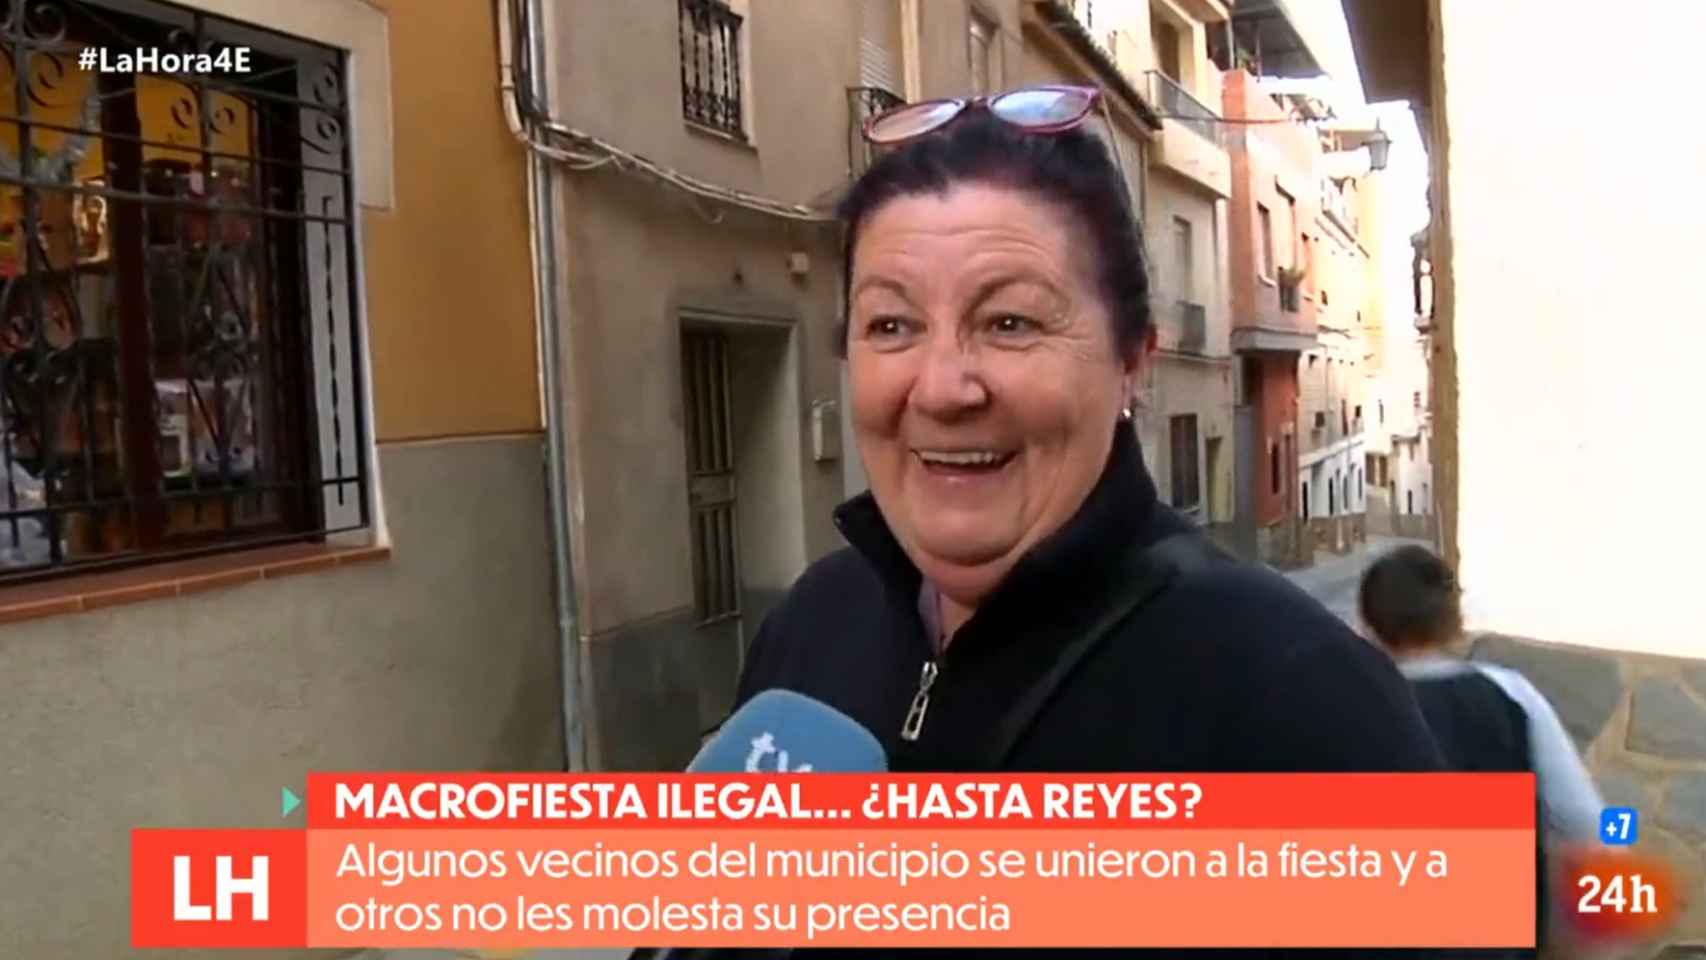 La lección de los vecinos de la rave ilegal de Granada a las televisiones que buscan el conflicto